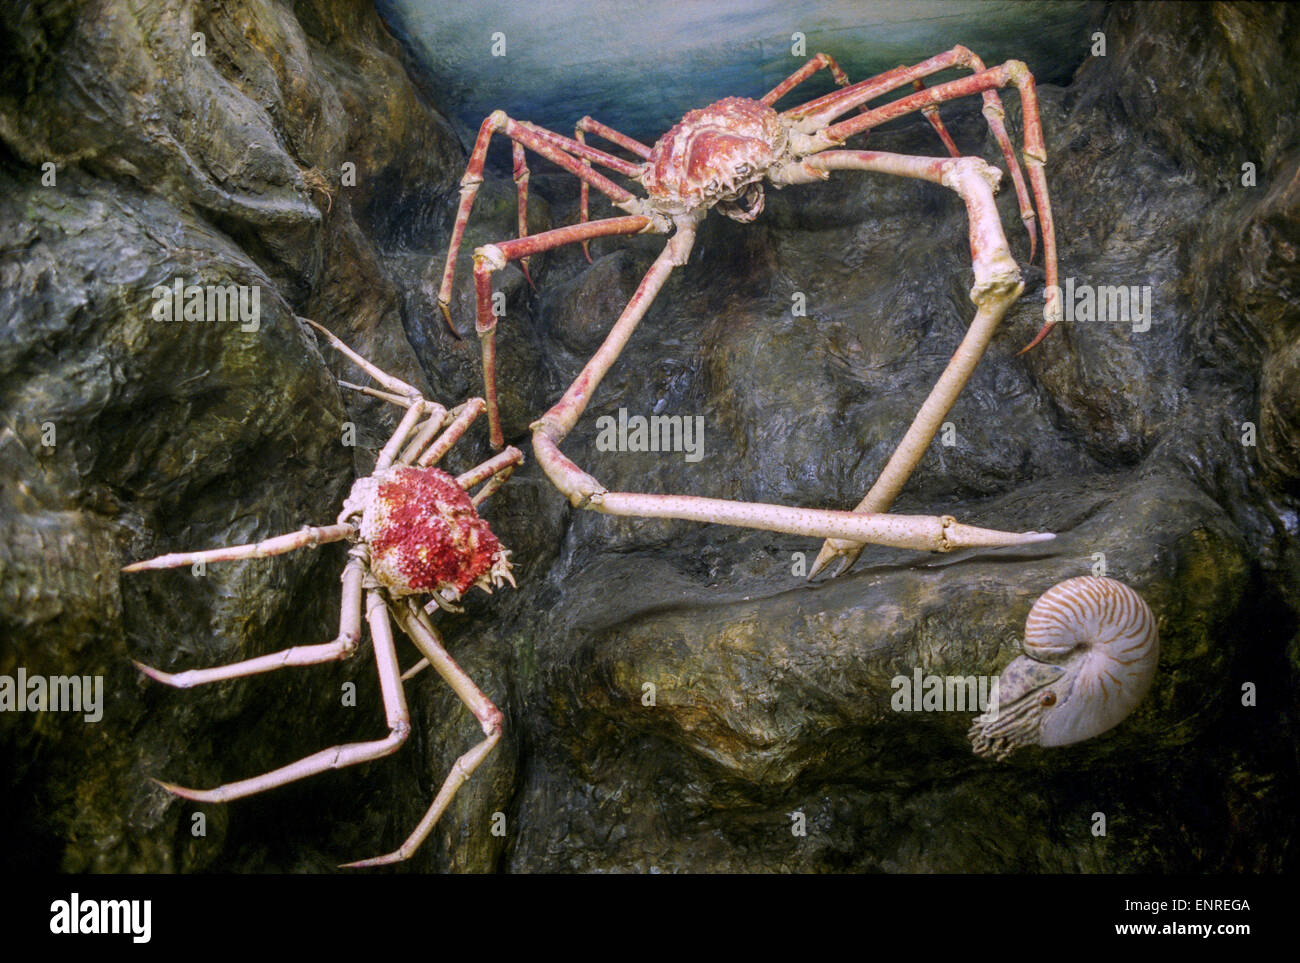 Macrocheira kaempferi crabe araignée japonais, Banque D'Images